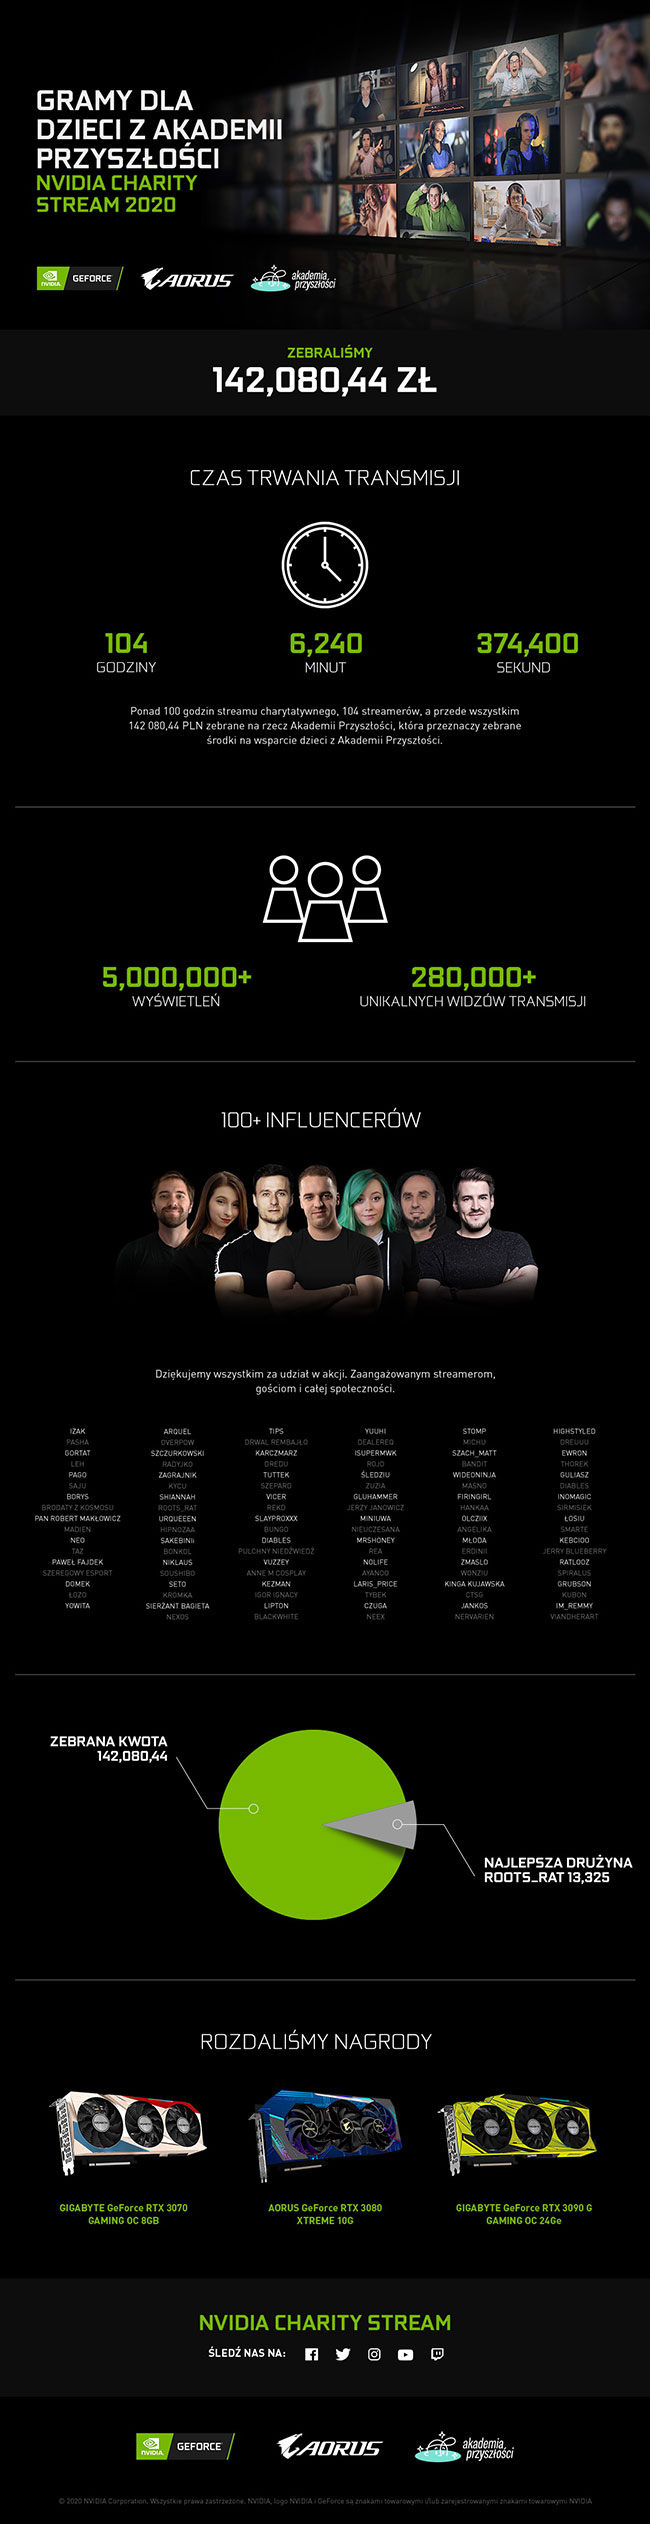 Wielki sukces NVIDIA Charity Stream